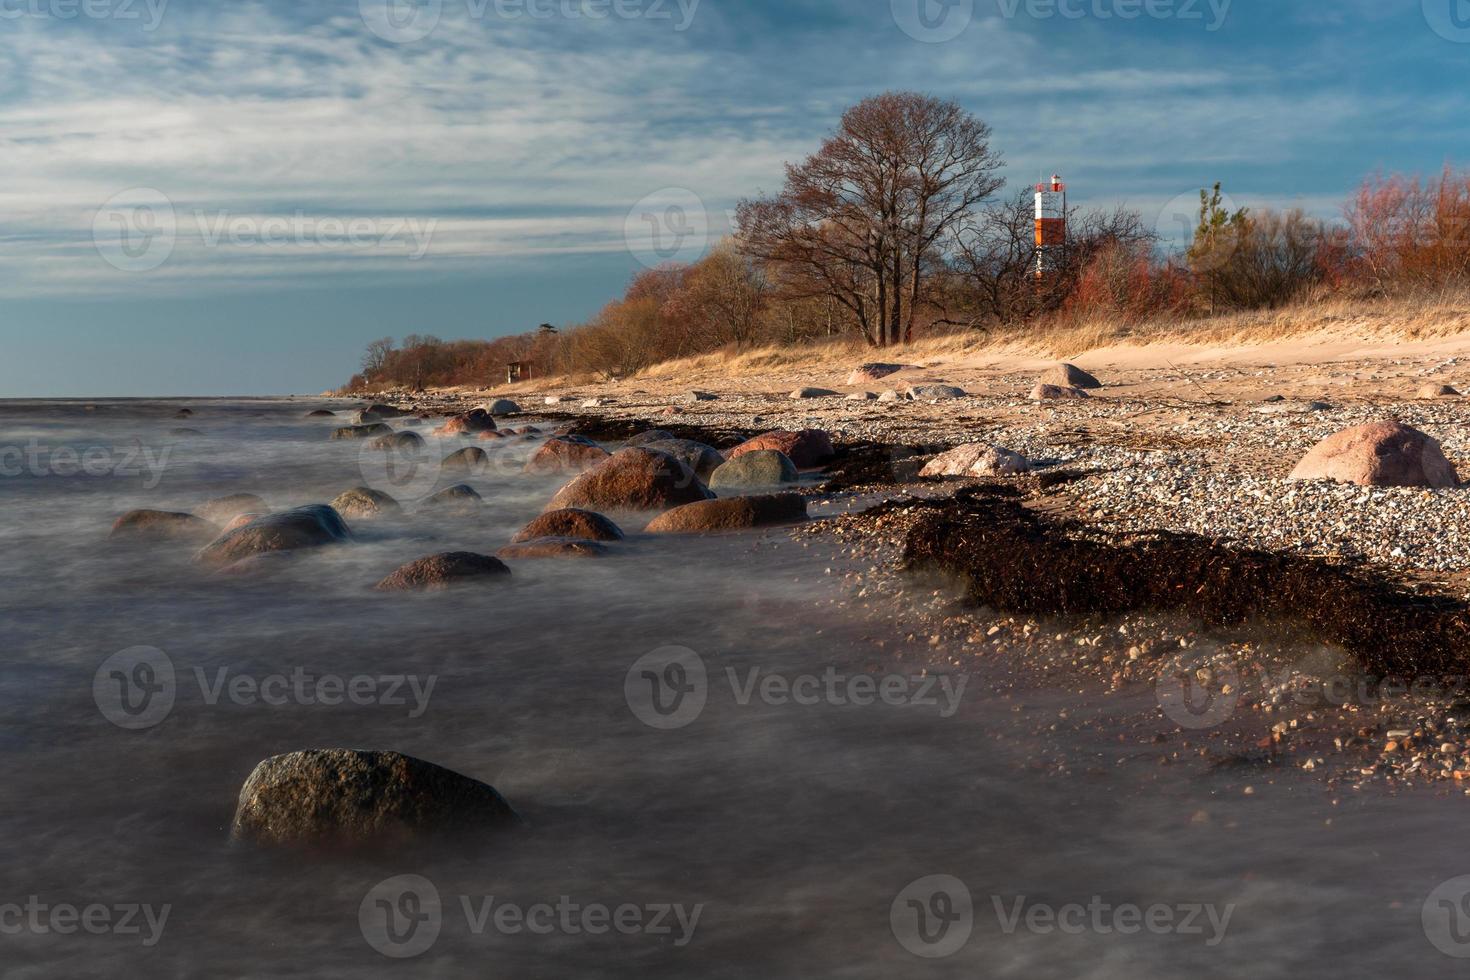 Steine an der Küste der Ostsee bei Sonnenuntergang foto